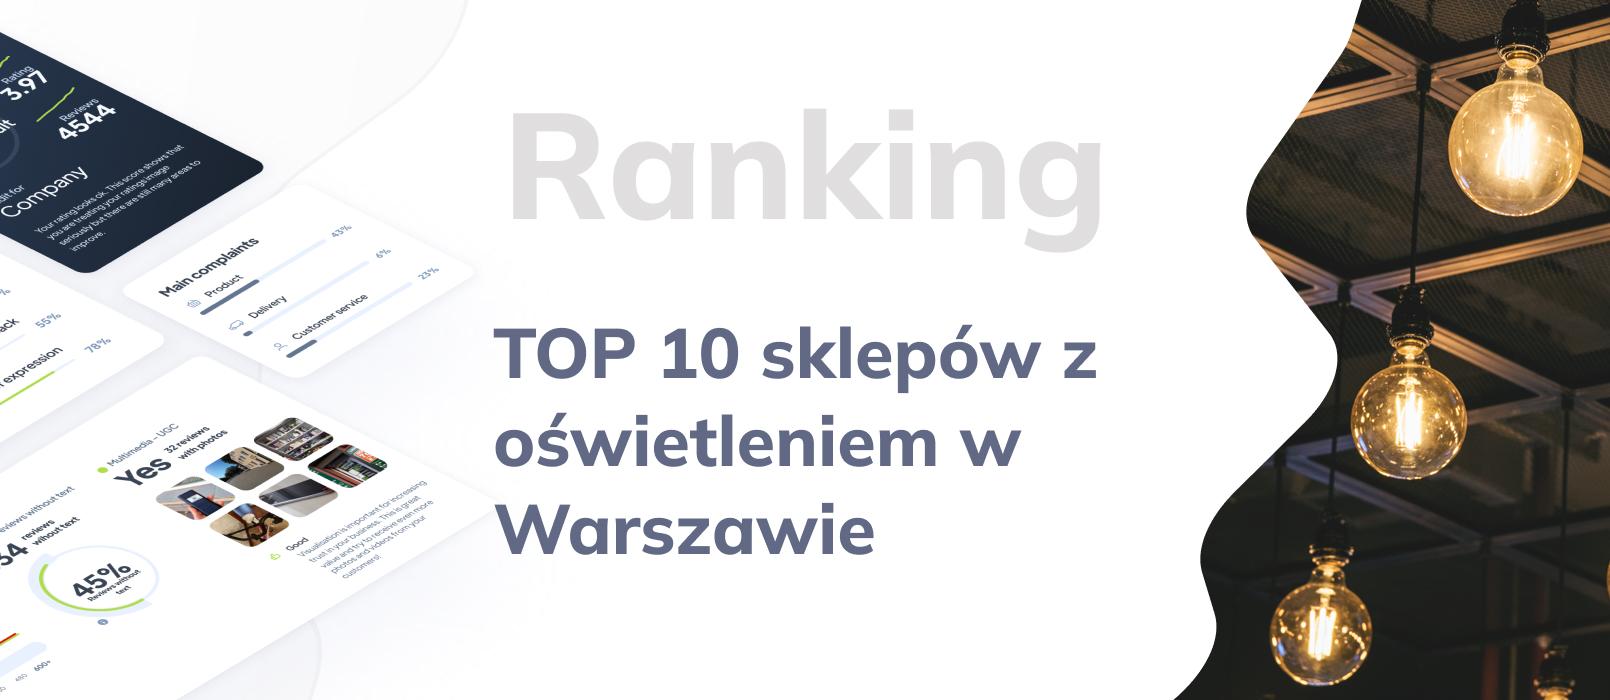 Top 10 - zestawienie najlepszych sklepów z oświetleniem w Warszawie.